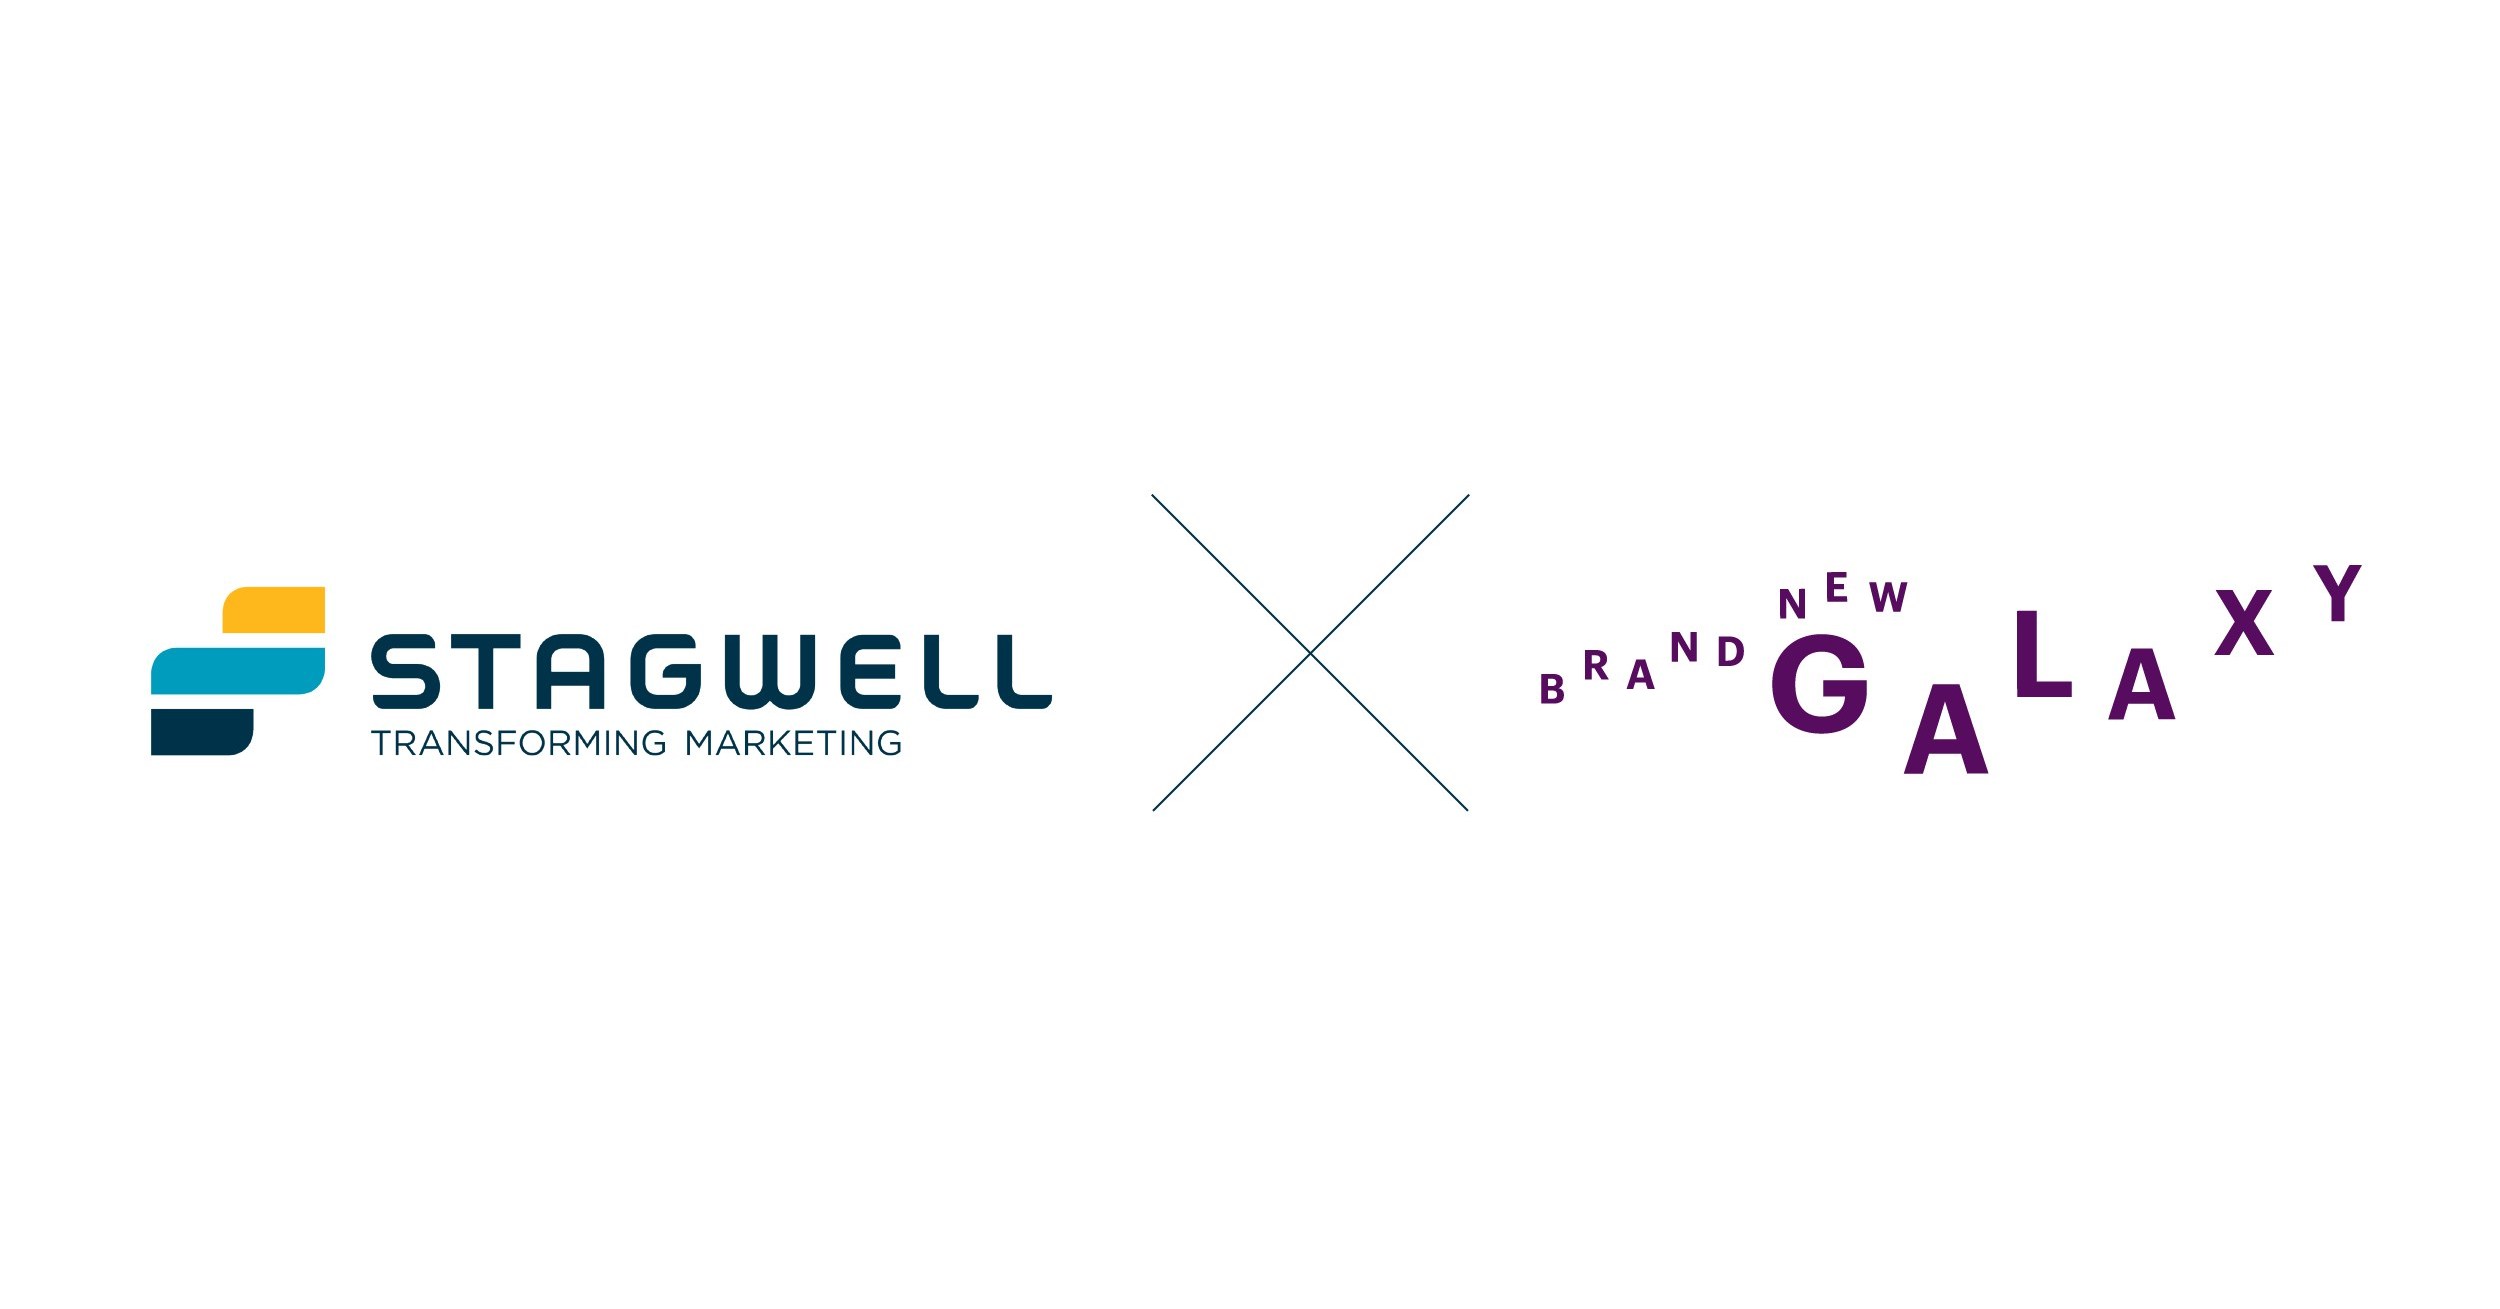 Stagwell (STGW) przejmuje nową firmę Galaxy, aby przekształcić rozwiązania handlu internetowego dla globalnych klientów